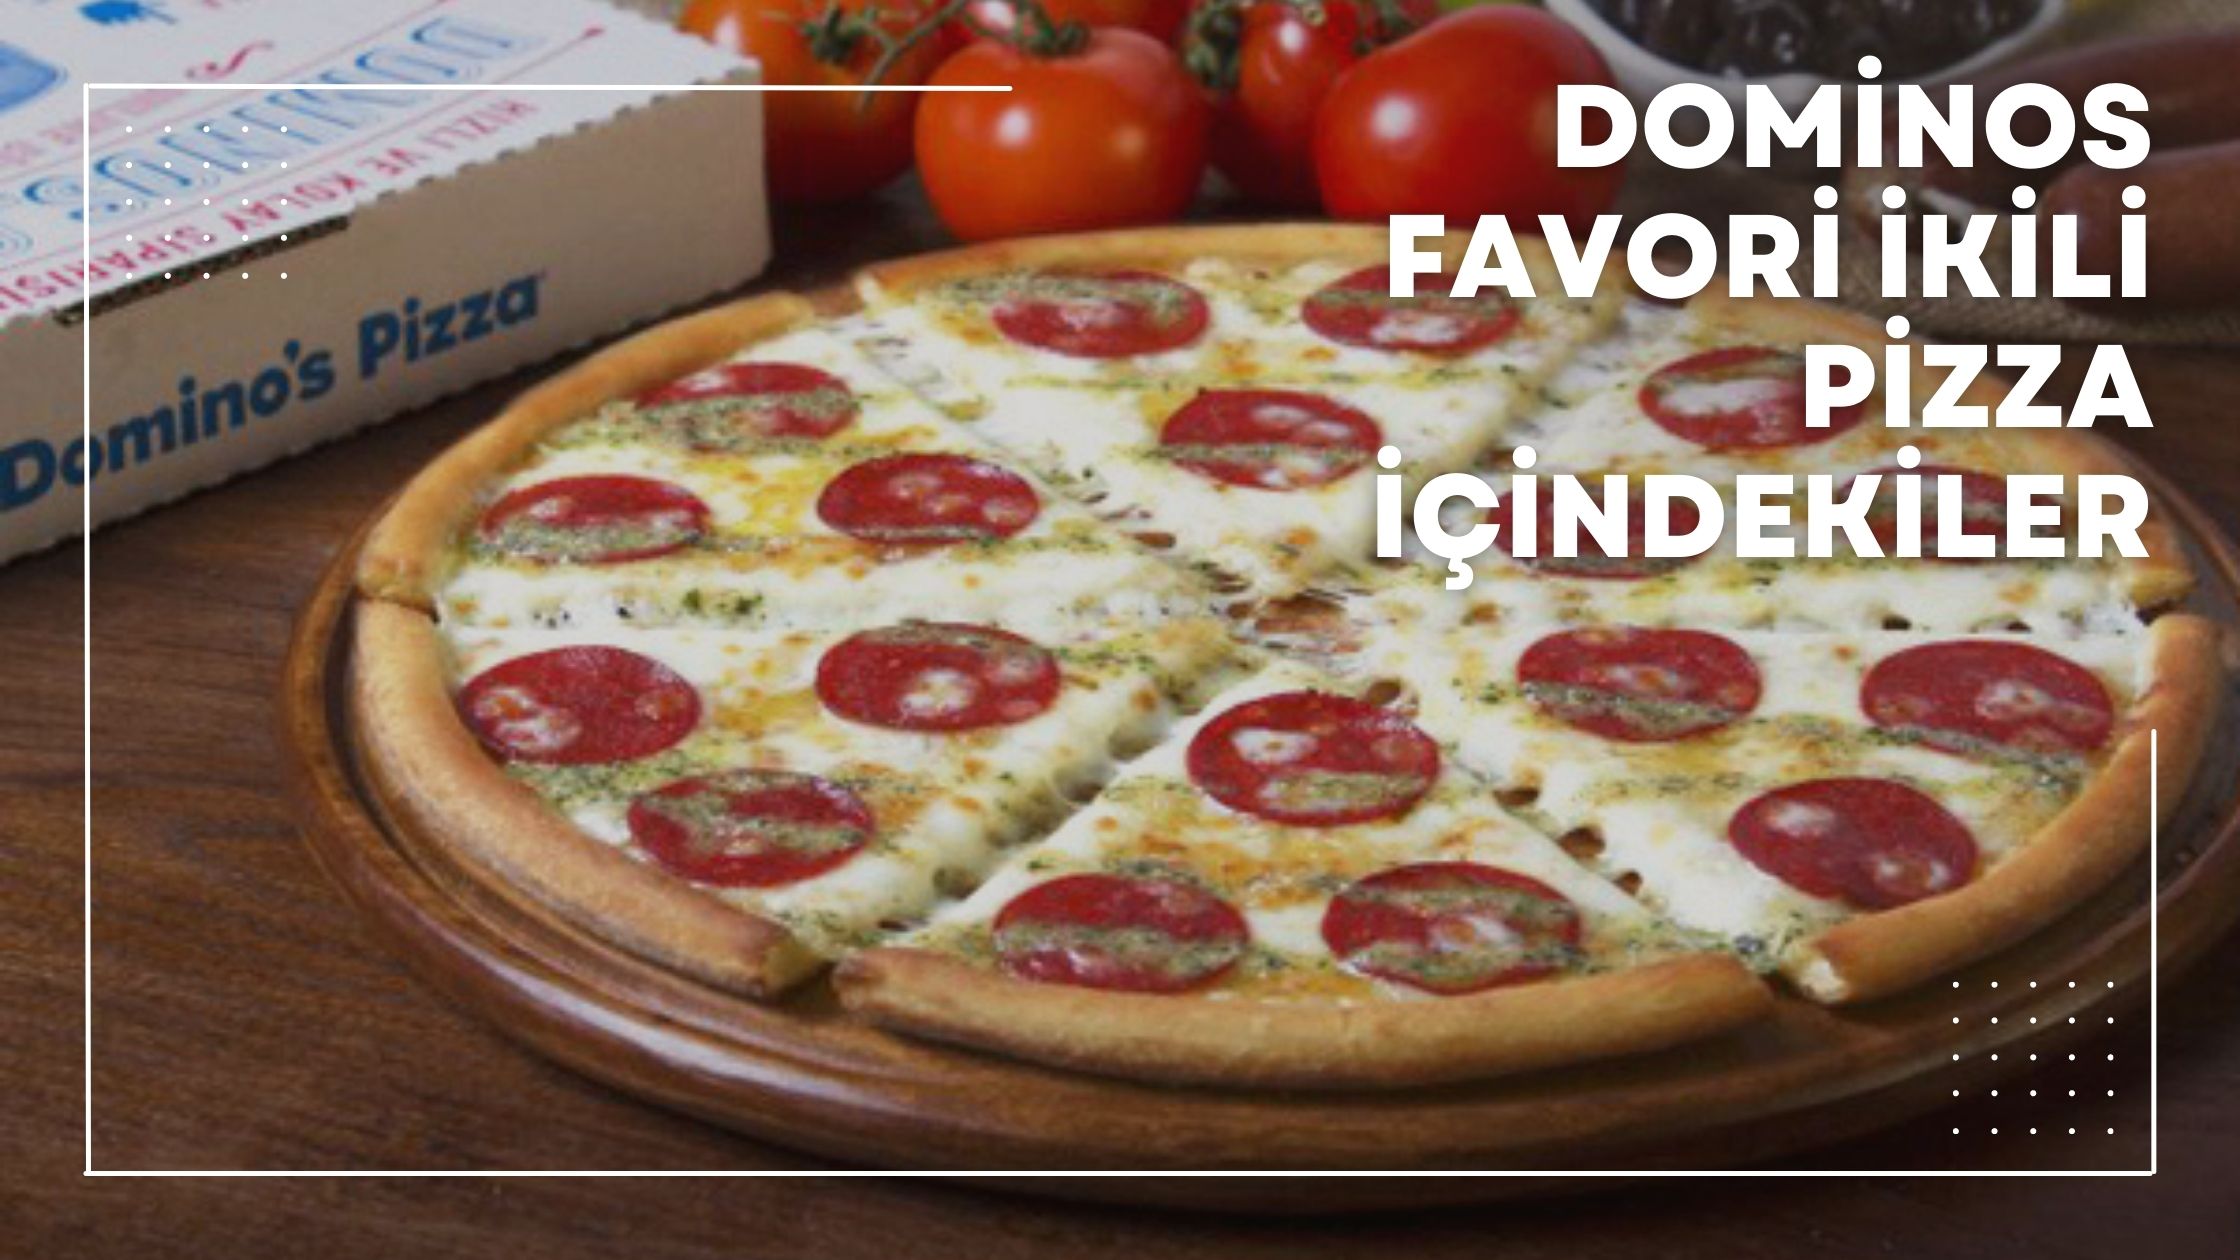 Dominos Favori İkili Pizza İçindekiler